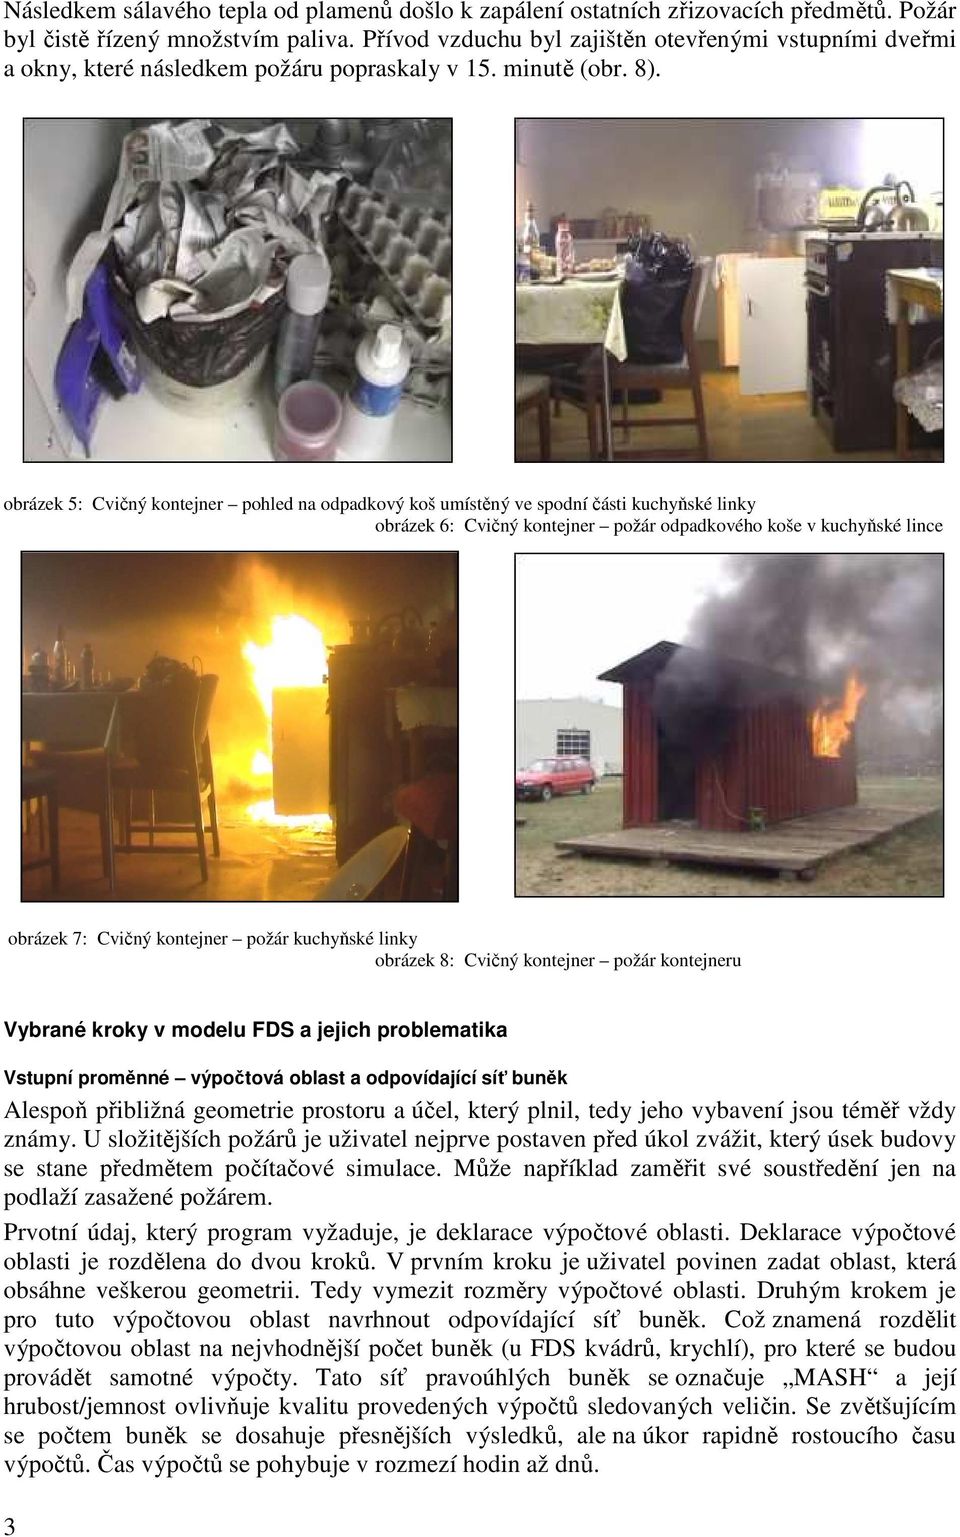 obrázek 5: Cvičný kontejner pohled na odpadkový koš umístěný ve spodní části kuchyňské linky obrázek 6: Cvičný kontejner požár odpadkového koše v kuchyňské lince obrázek 7: Cvičný kontejner požár